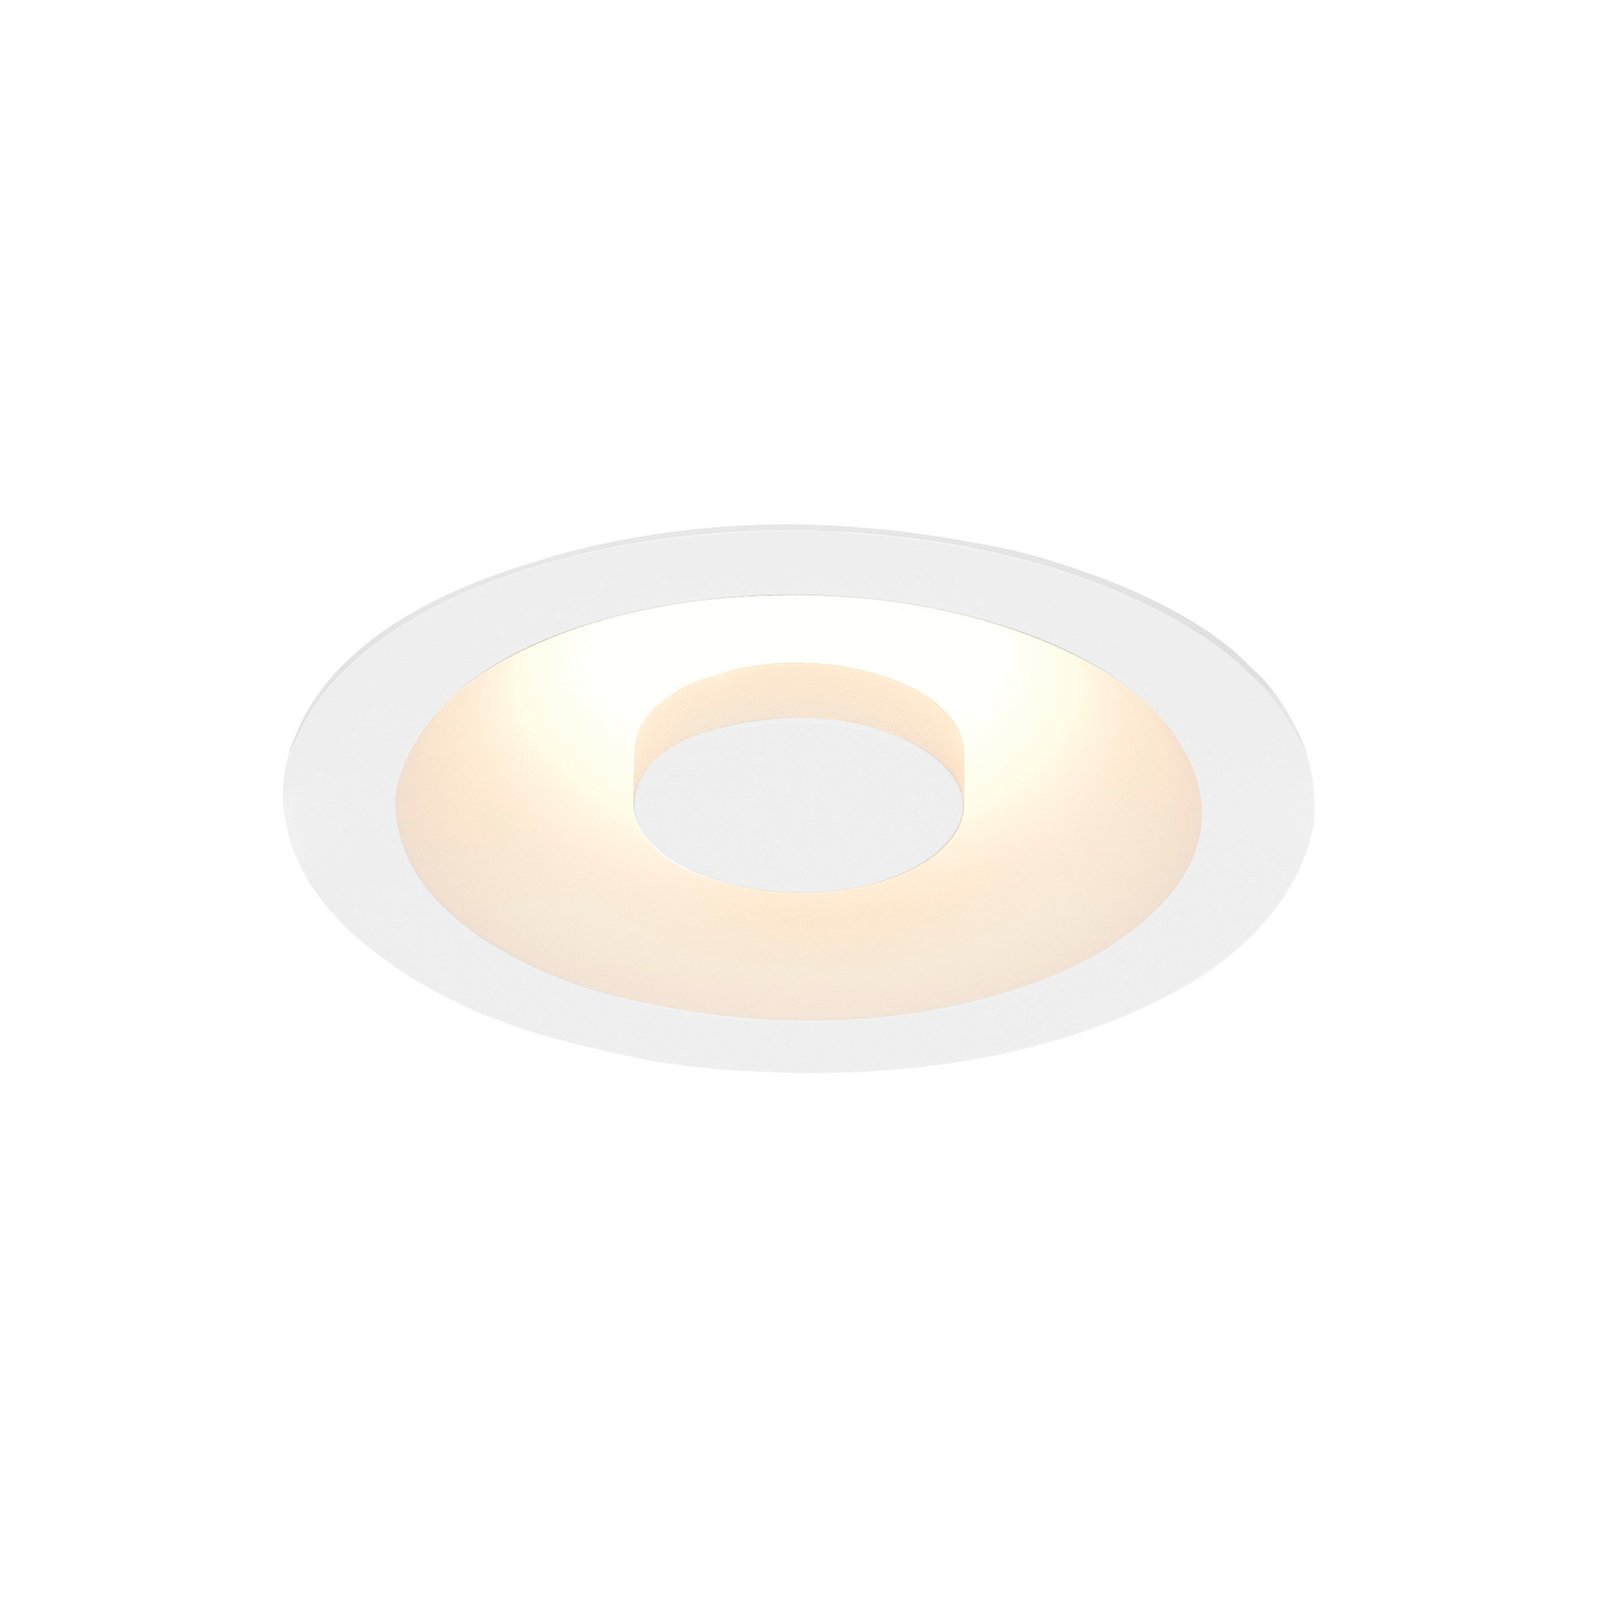 SLV Occuldas 14 lámpara empotrable LED, blanco, aluminio, Ø 14 cm